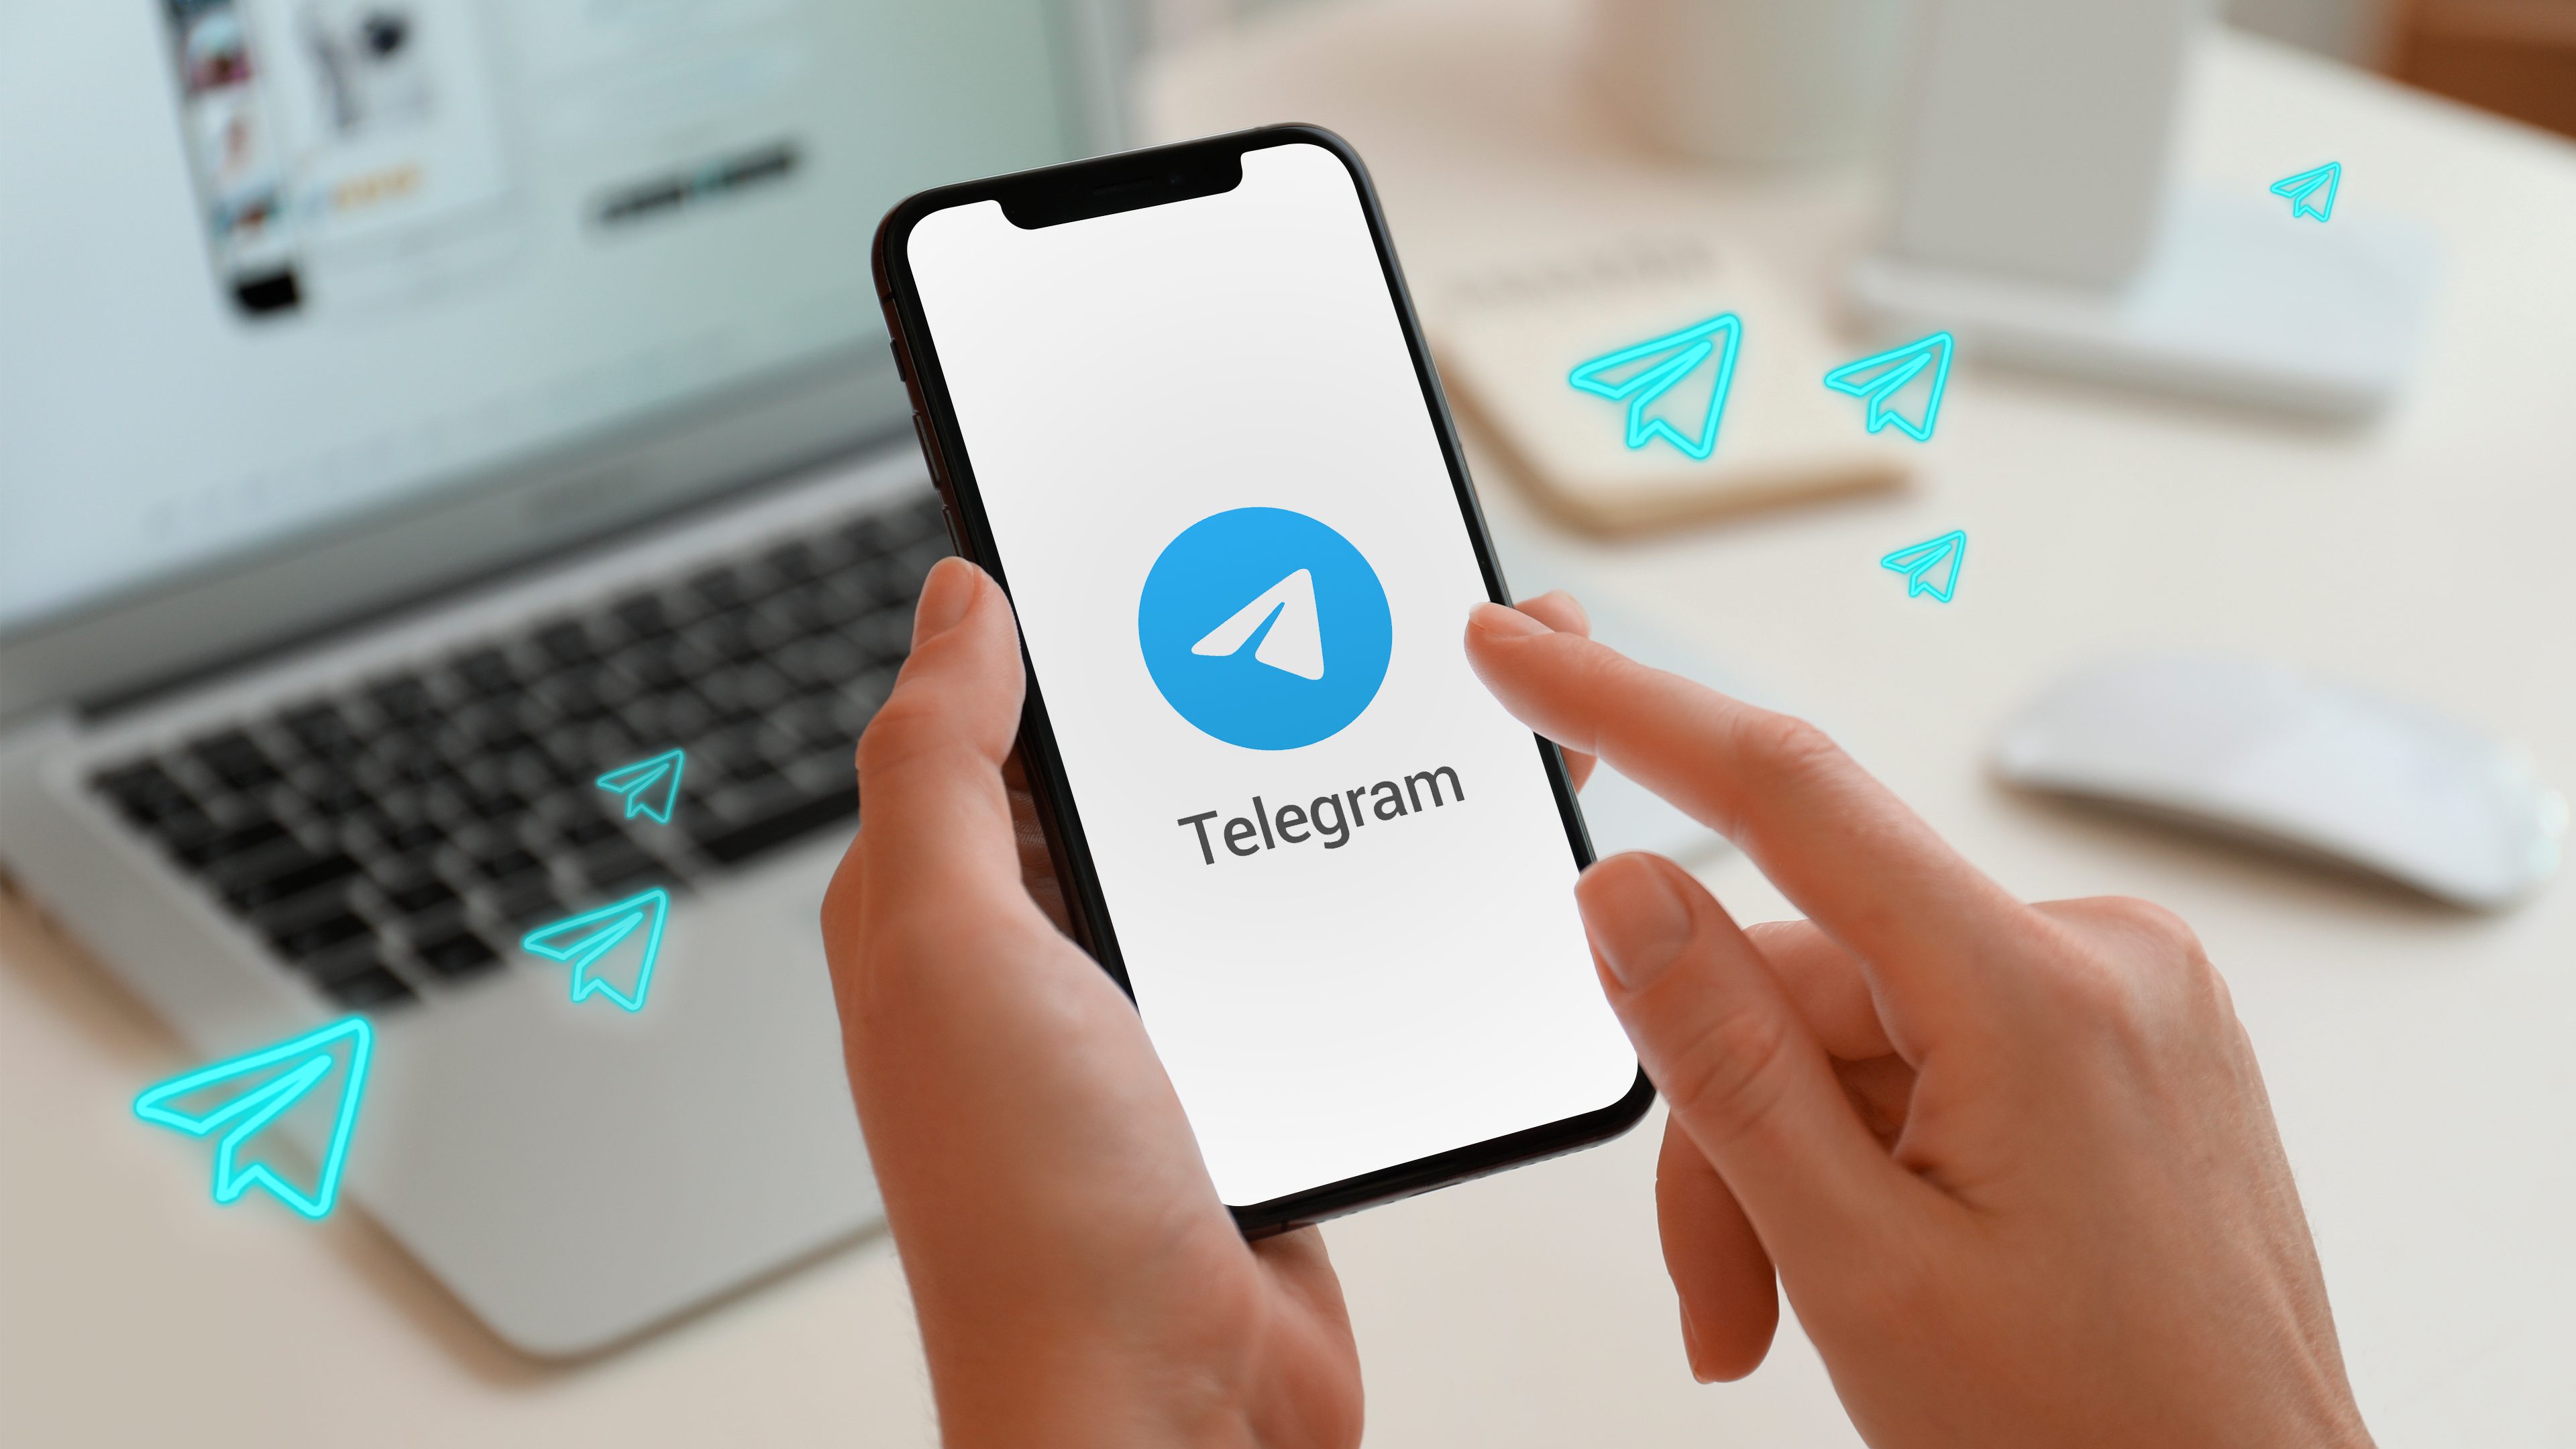 Telegram РФ обновление приложение социальнаясеть общение пользователь россия дуров